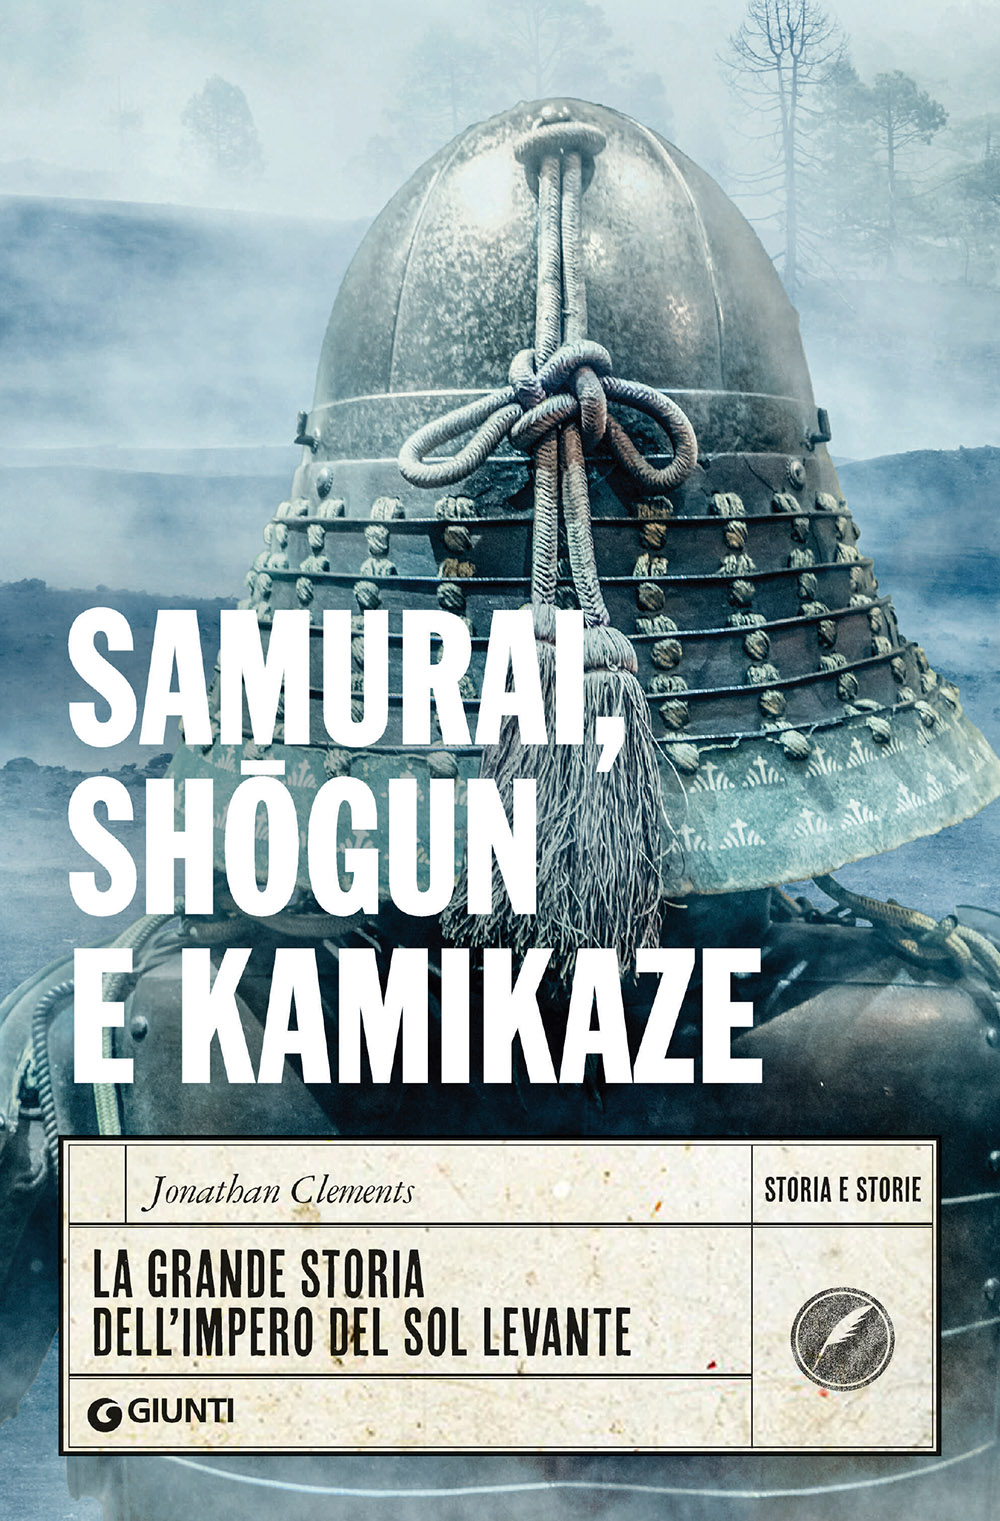 Samurai, shogun e kamikaze